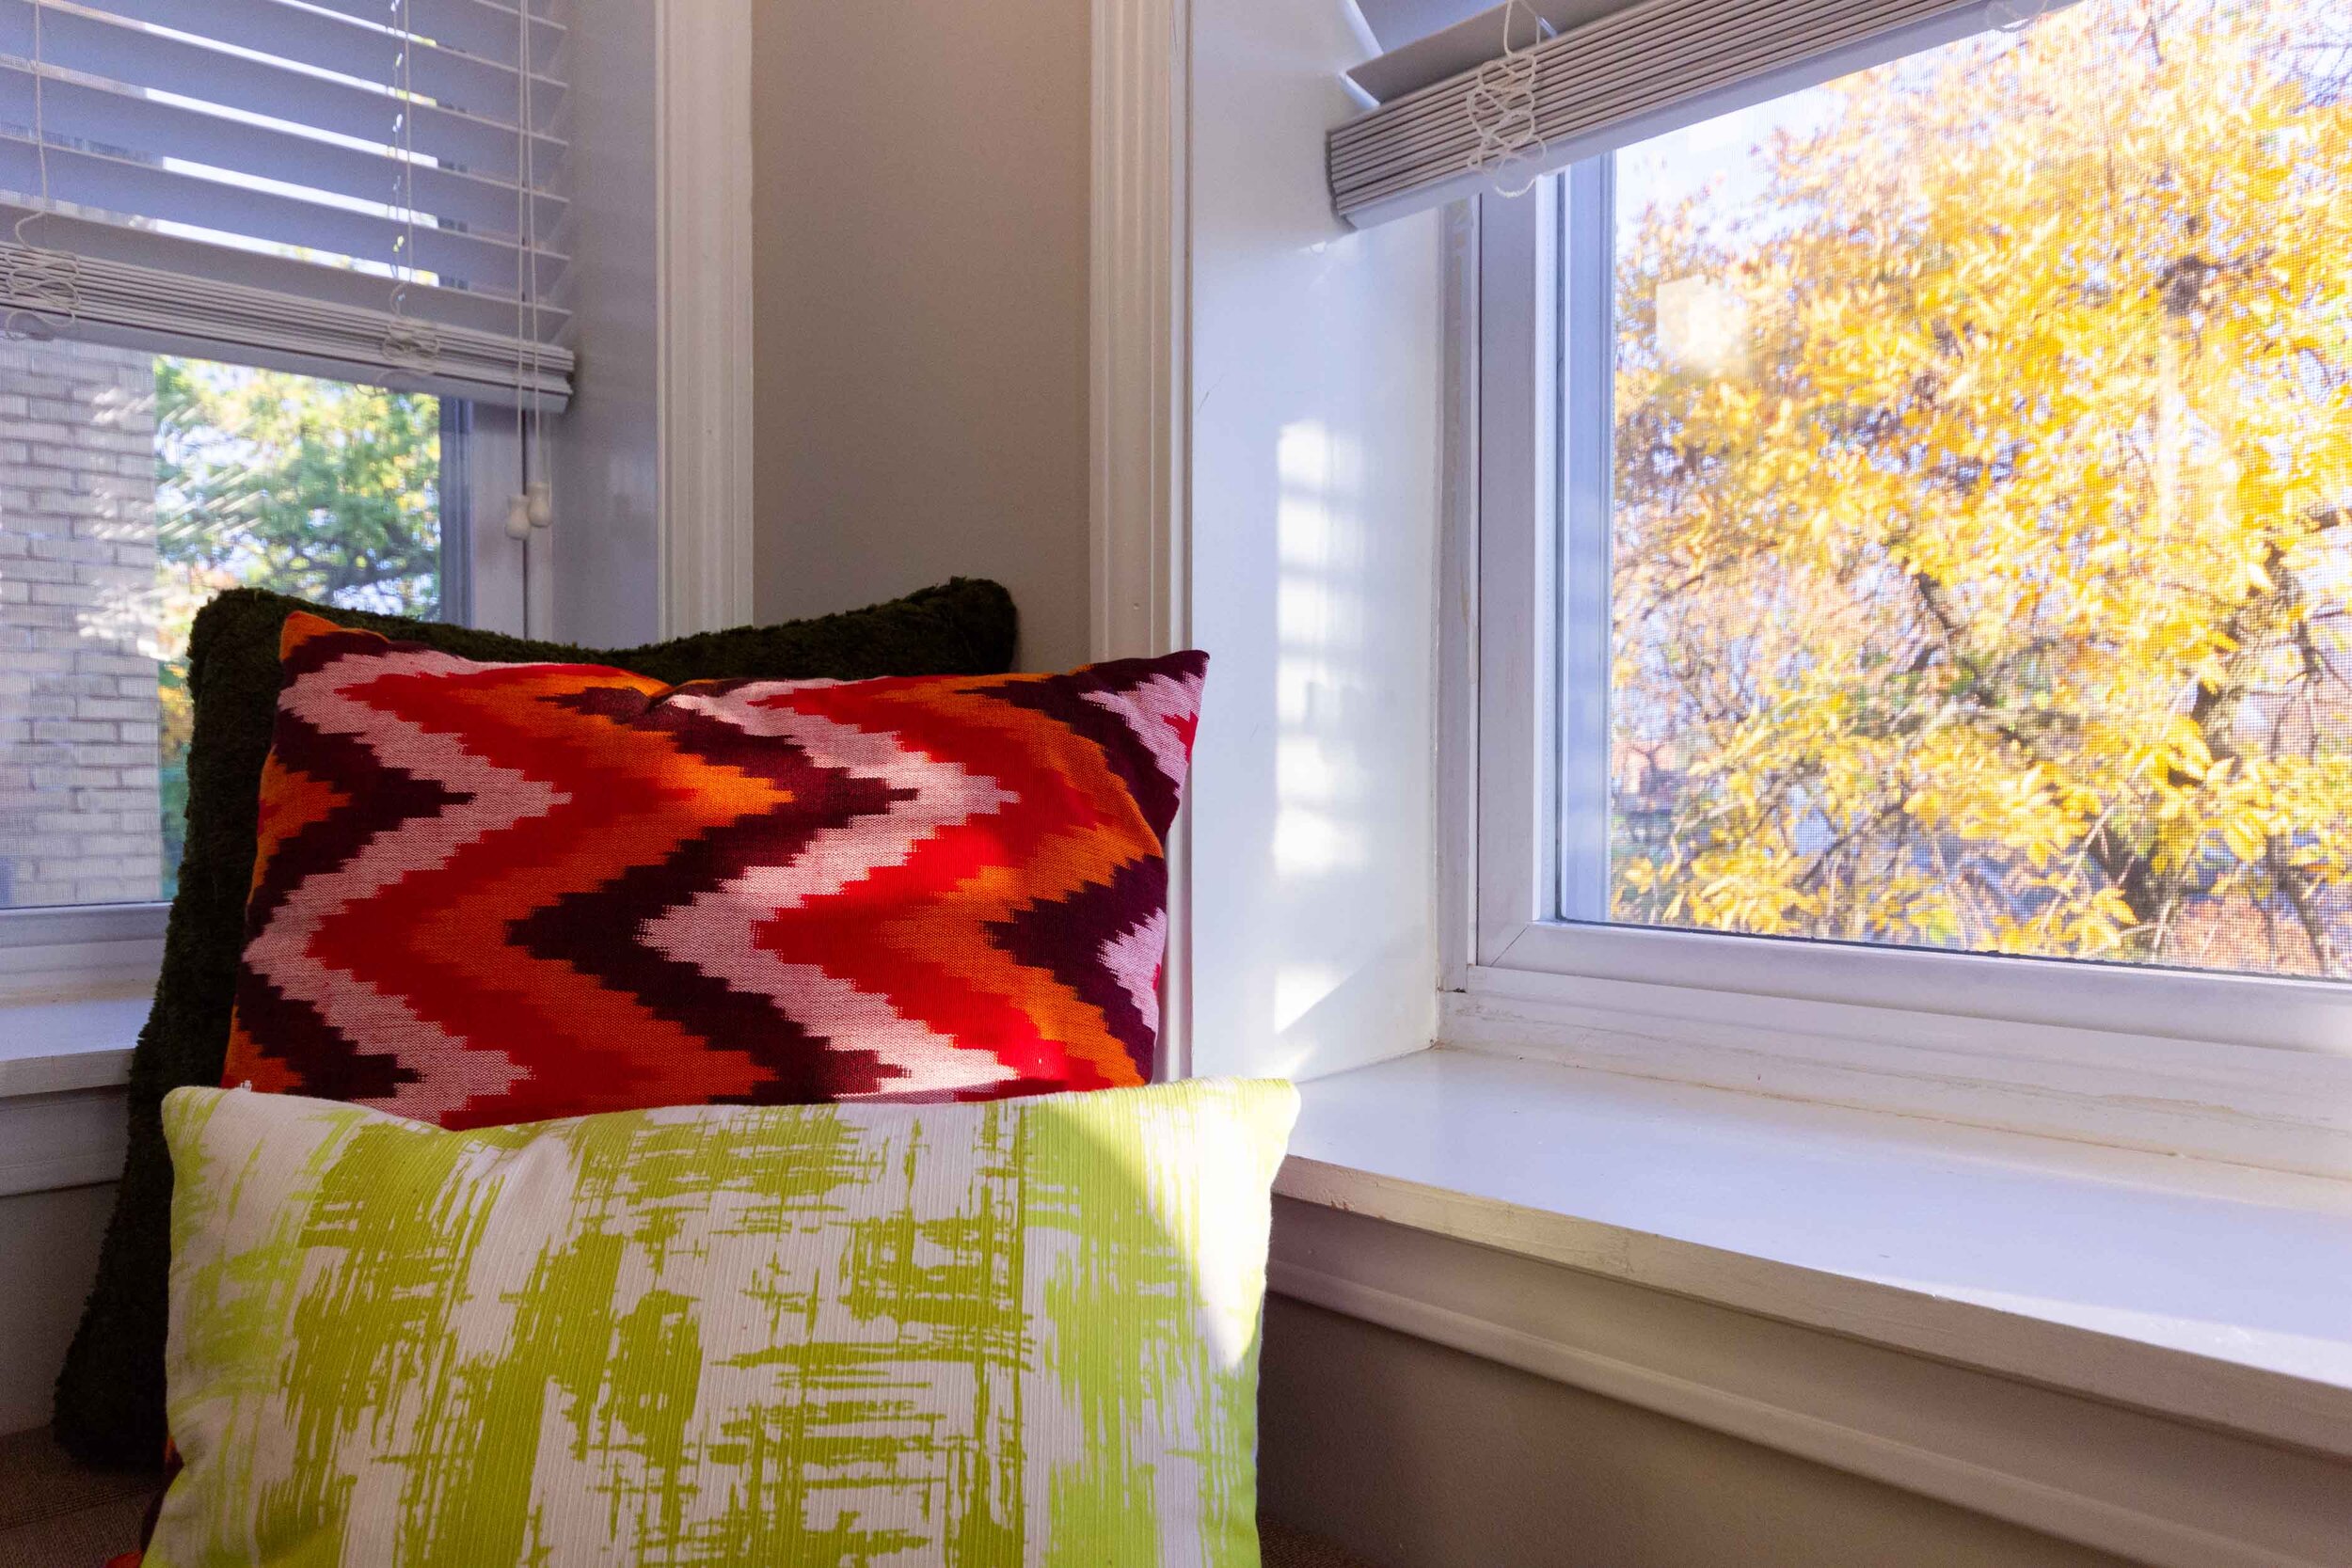 质朴的现代客厅 - 在秋天天的自定义窗口长凳 - 室内设计芝加哥.jpg